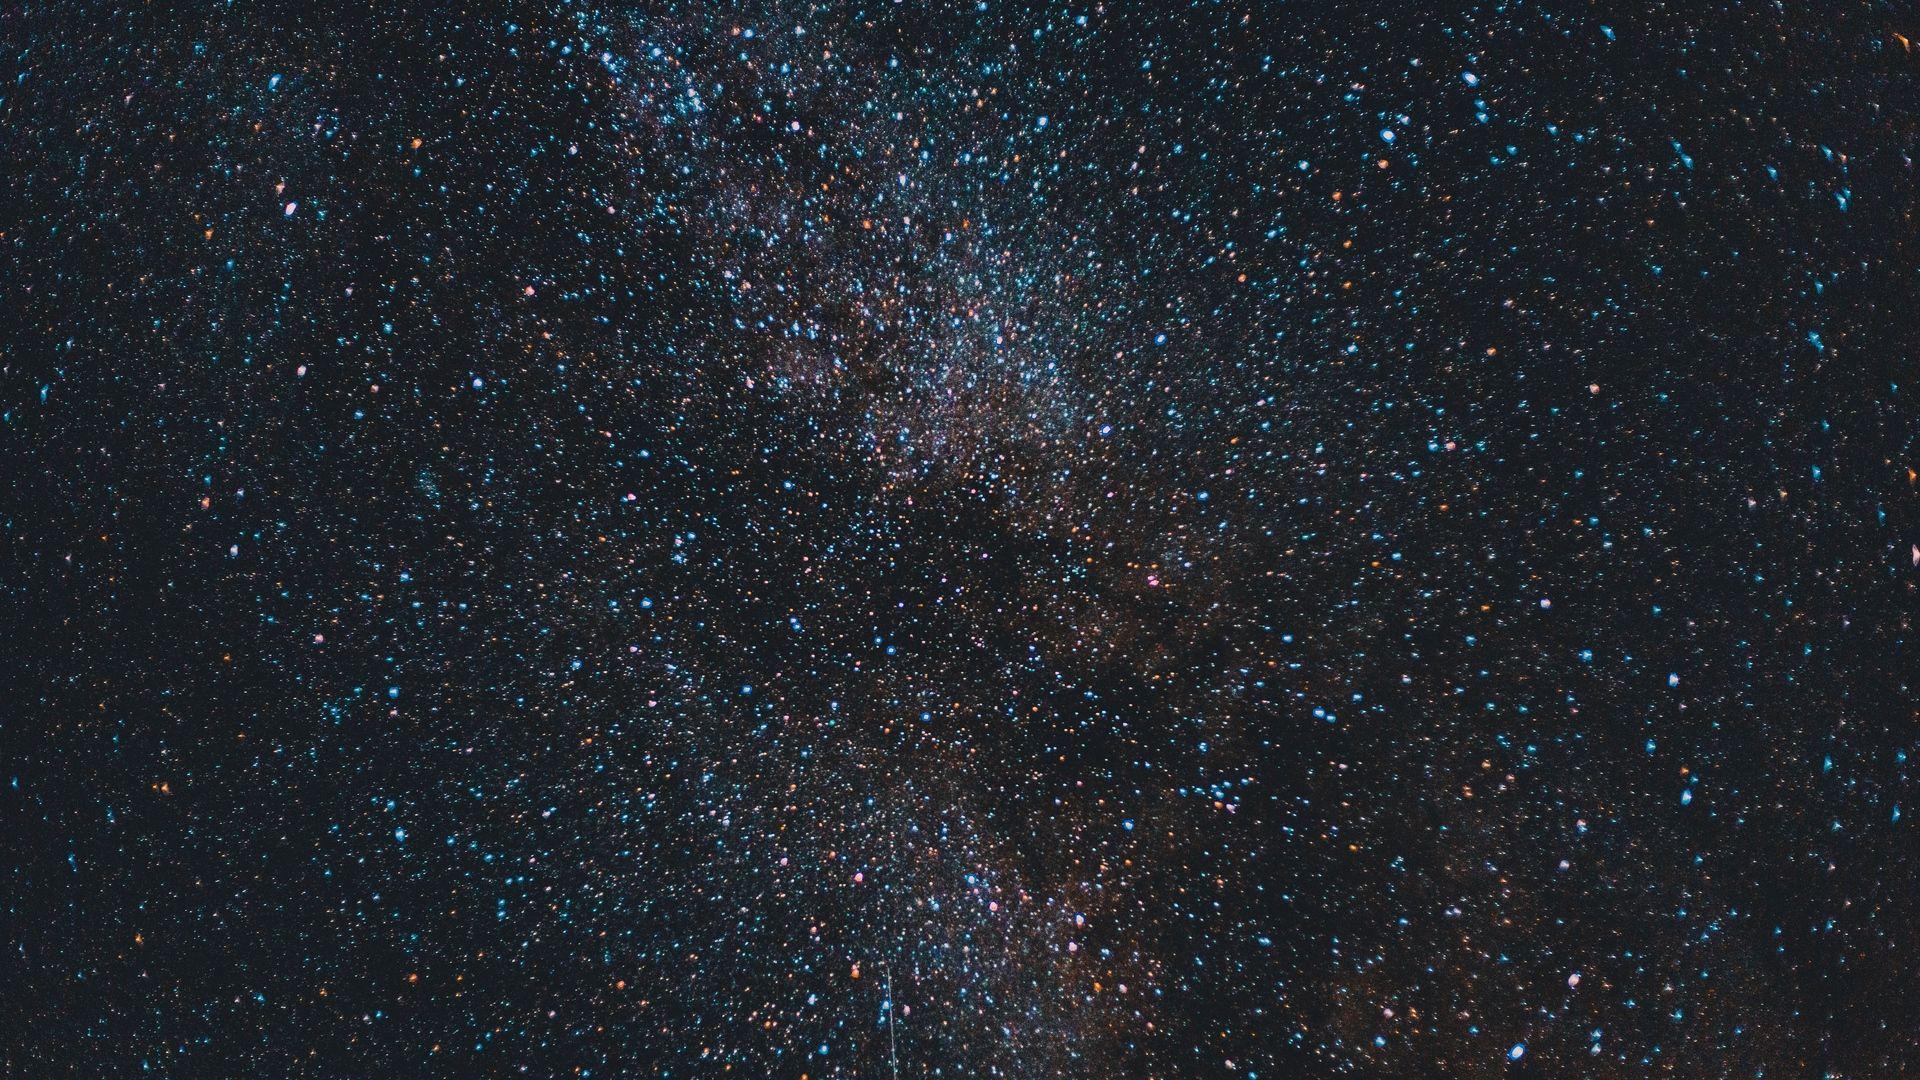 Hãy tải ngay hình nền Thiên Hà sao đẹp miễn phí để cảm nhận vẻ đẹp bao la, hoang sơ của vũ trụ. Mỗi chi tiết với sắc màu tinh tế sẽ đưa bạn vào không gian đầy hoài niệm và cảm giác huyền bí.